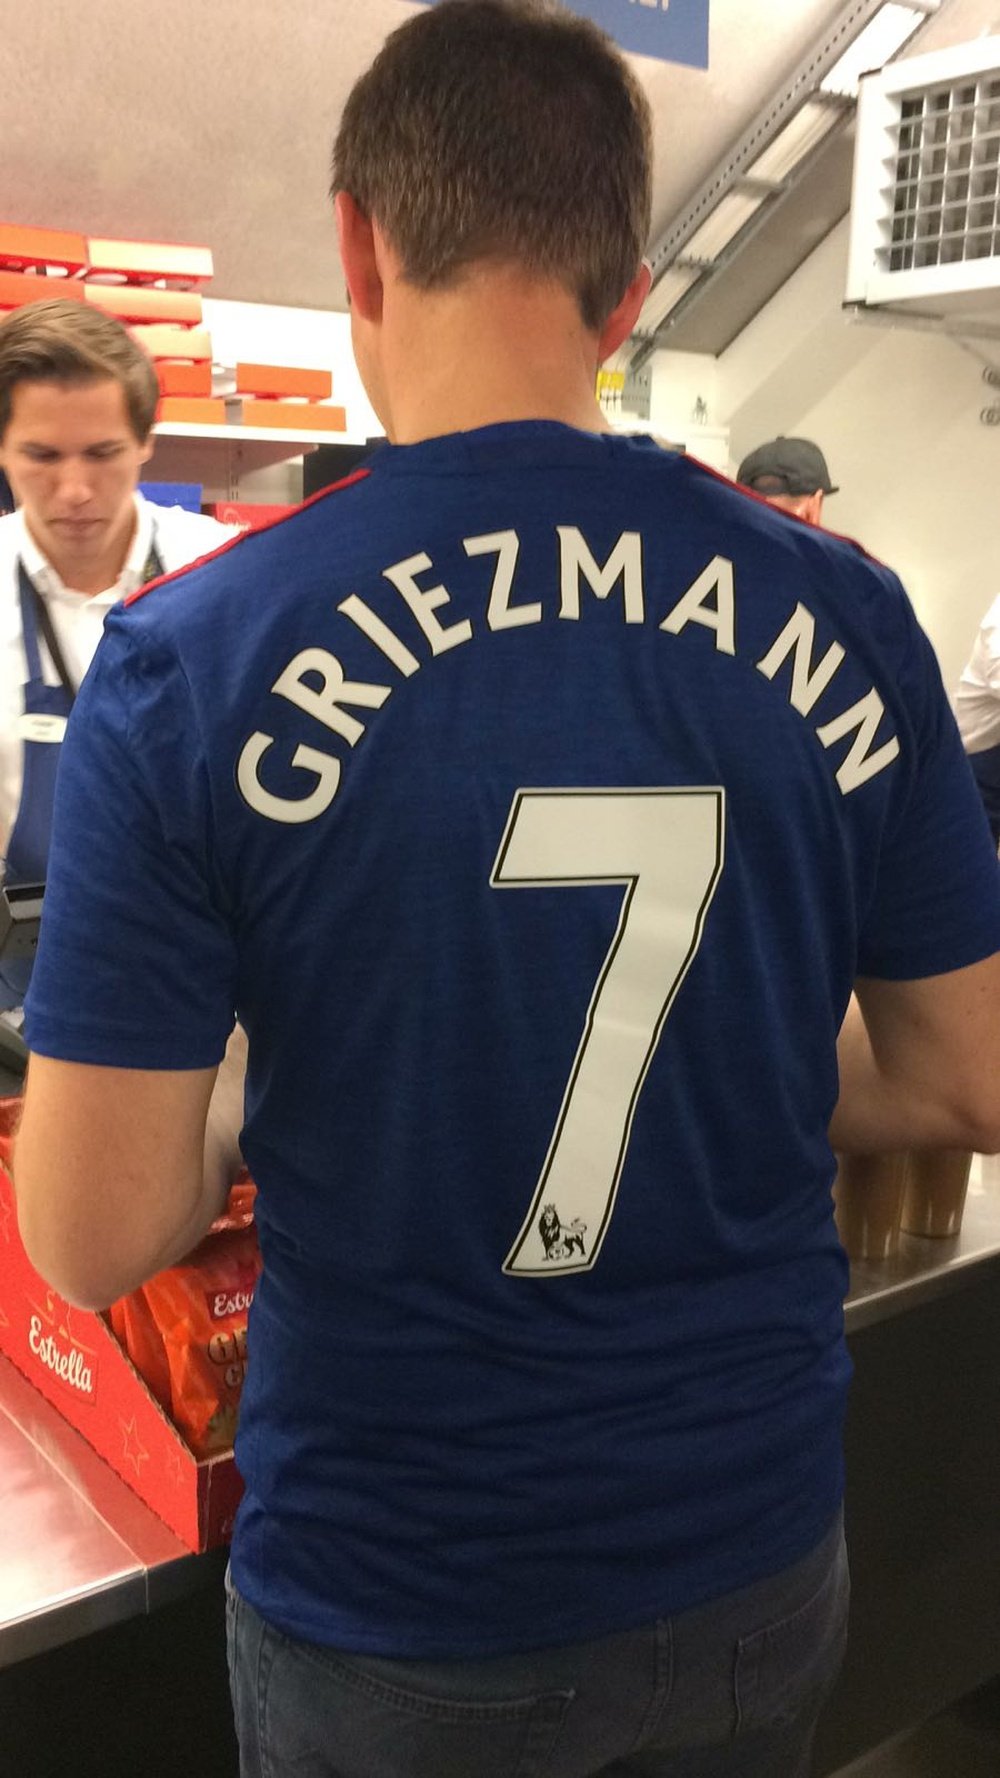 Les supporters de MU vont peut être pouvoir s'acheter le maillot de Griezmann. Twitter